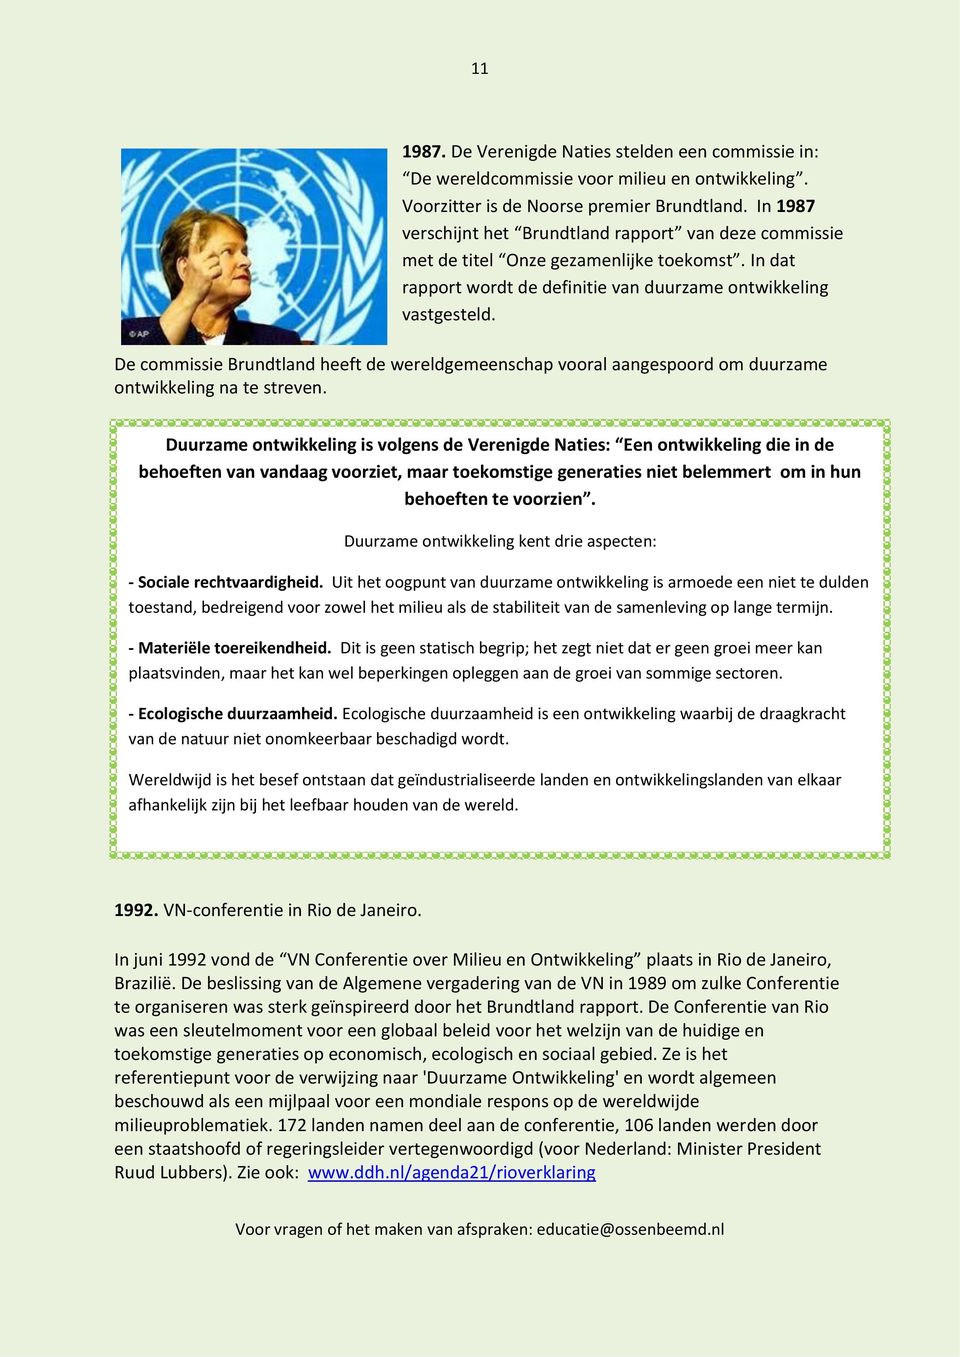 De commissie Brundtland heeft de wereldgemeenschap vooral aangespoord om duurzame ontwikkeling na te streven.